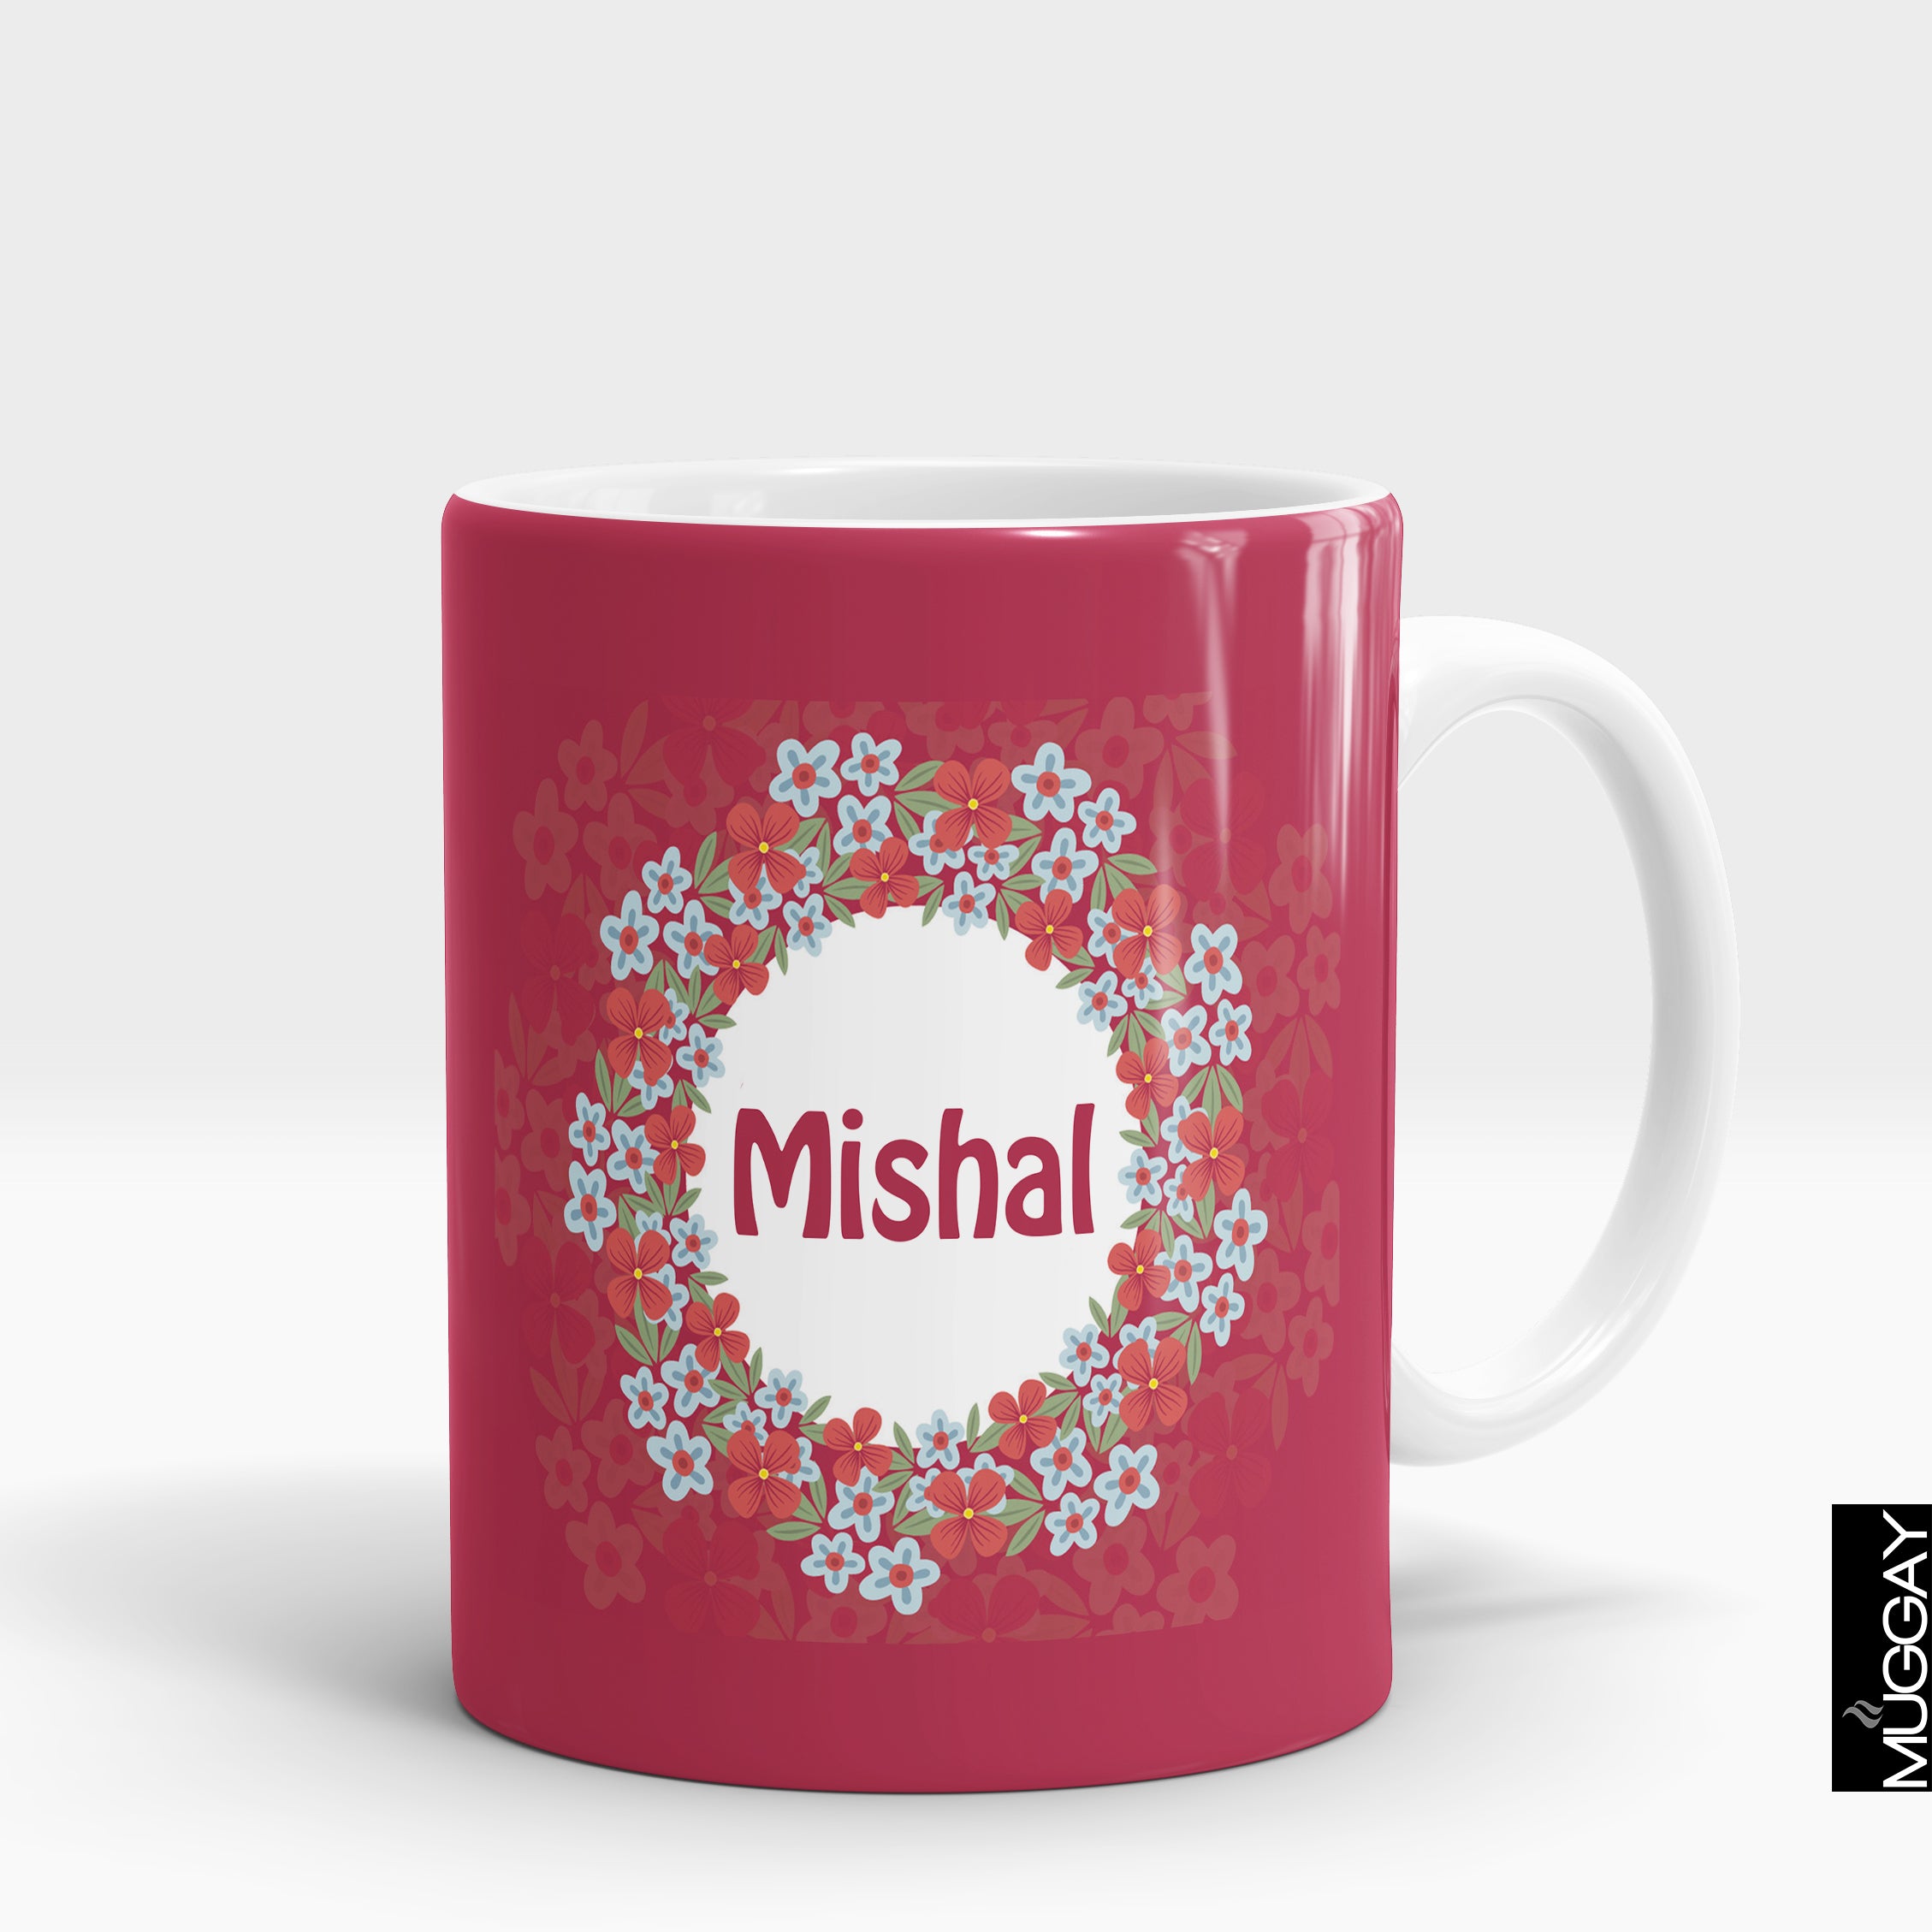 Mishal Mug